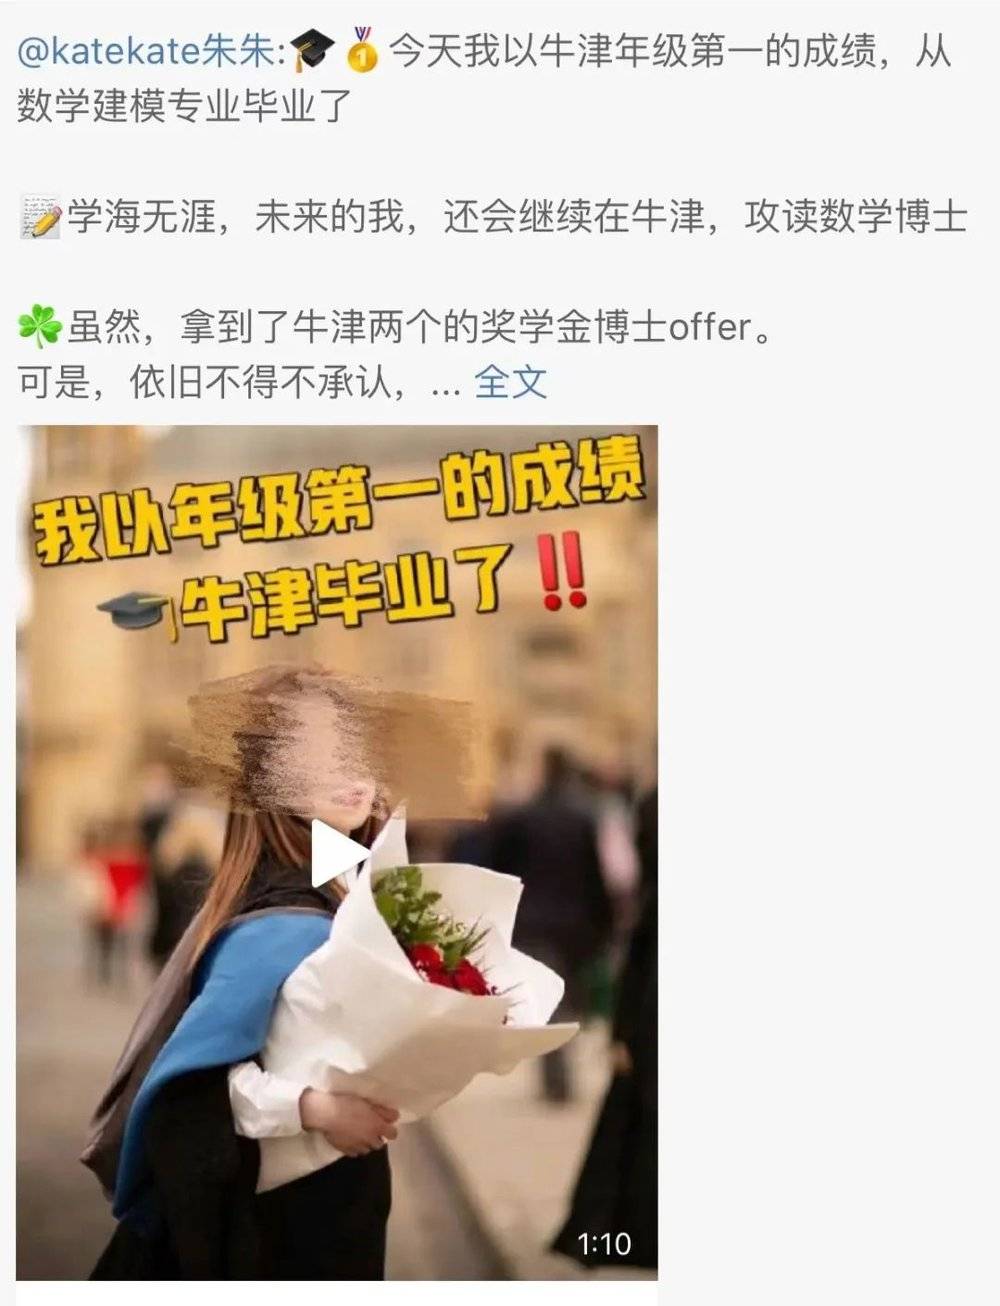 （朱雯琪发布微博记录自己的毕业）<br>